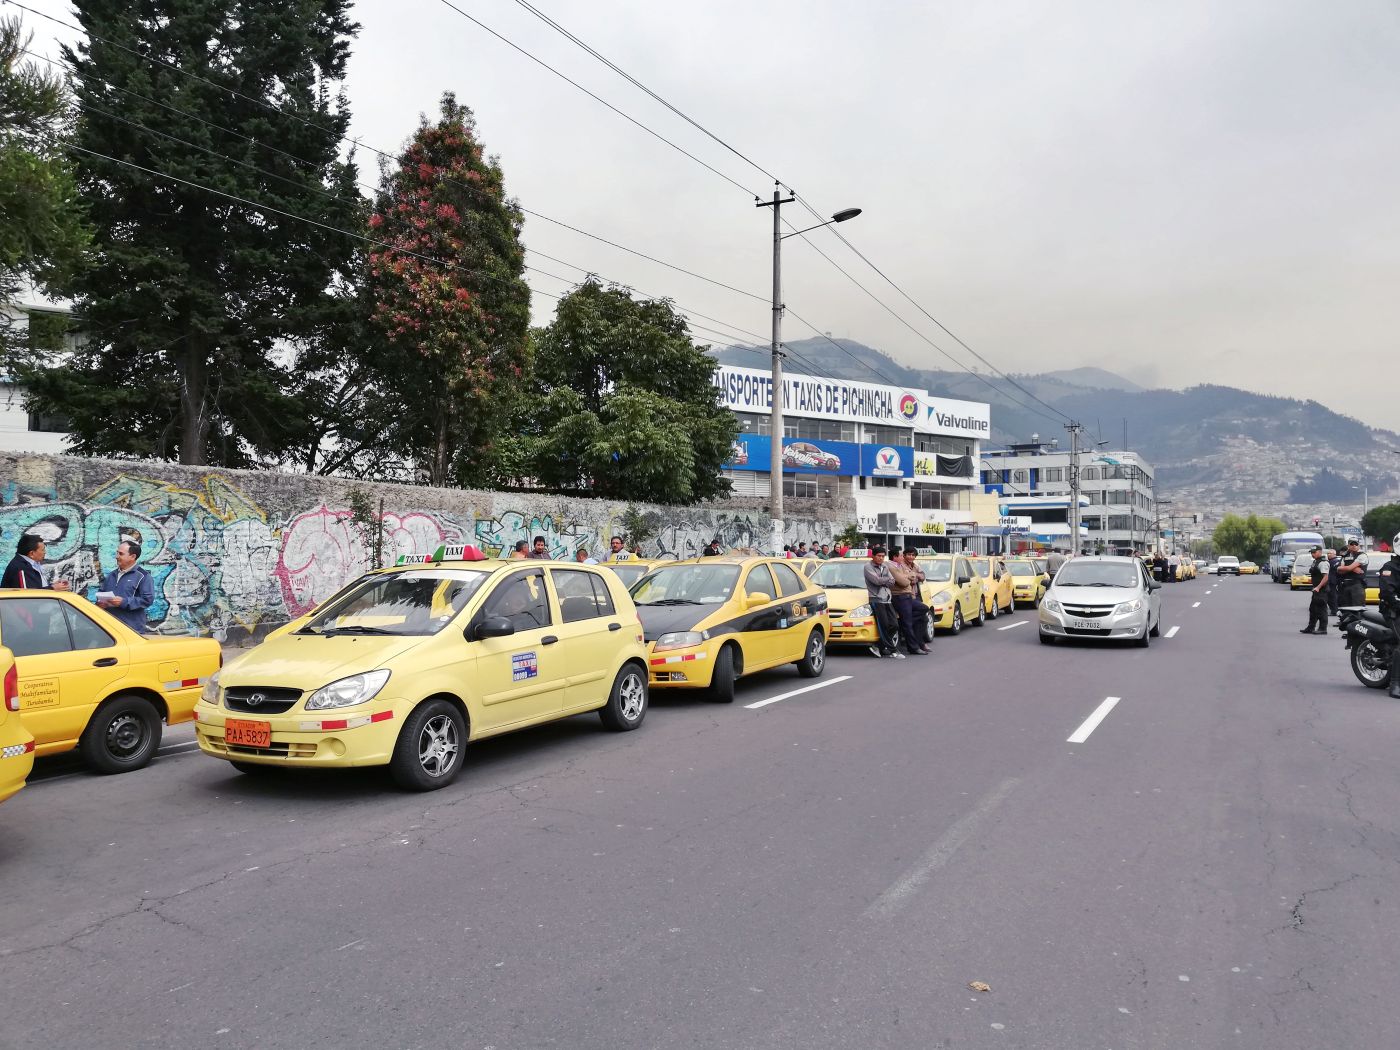  El gremio de taxistas de Pichincha paralizó el servicio durante la mañana del jueves 29 de noviembre para protestar contra la legalización de más unidades.